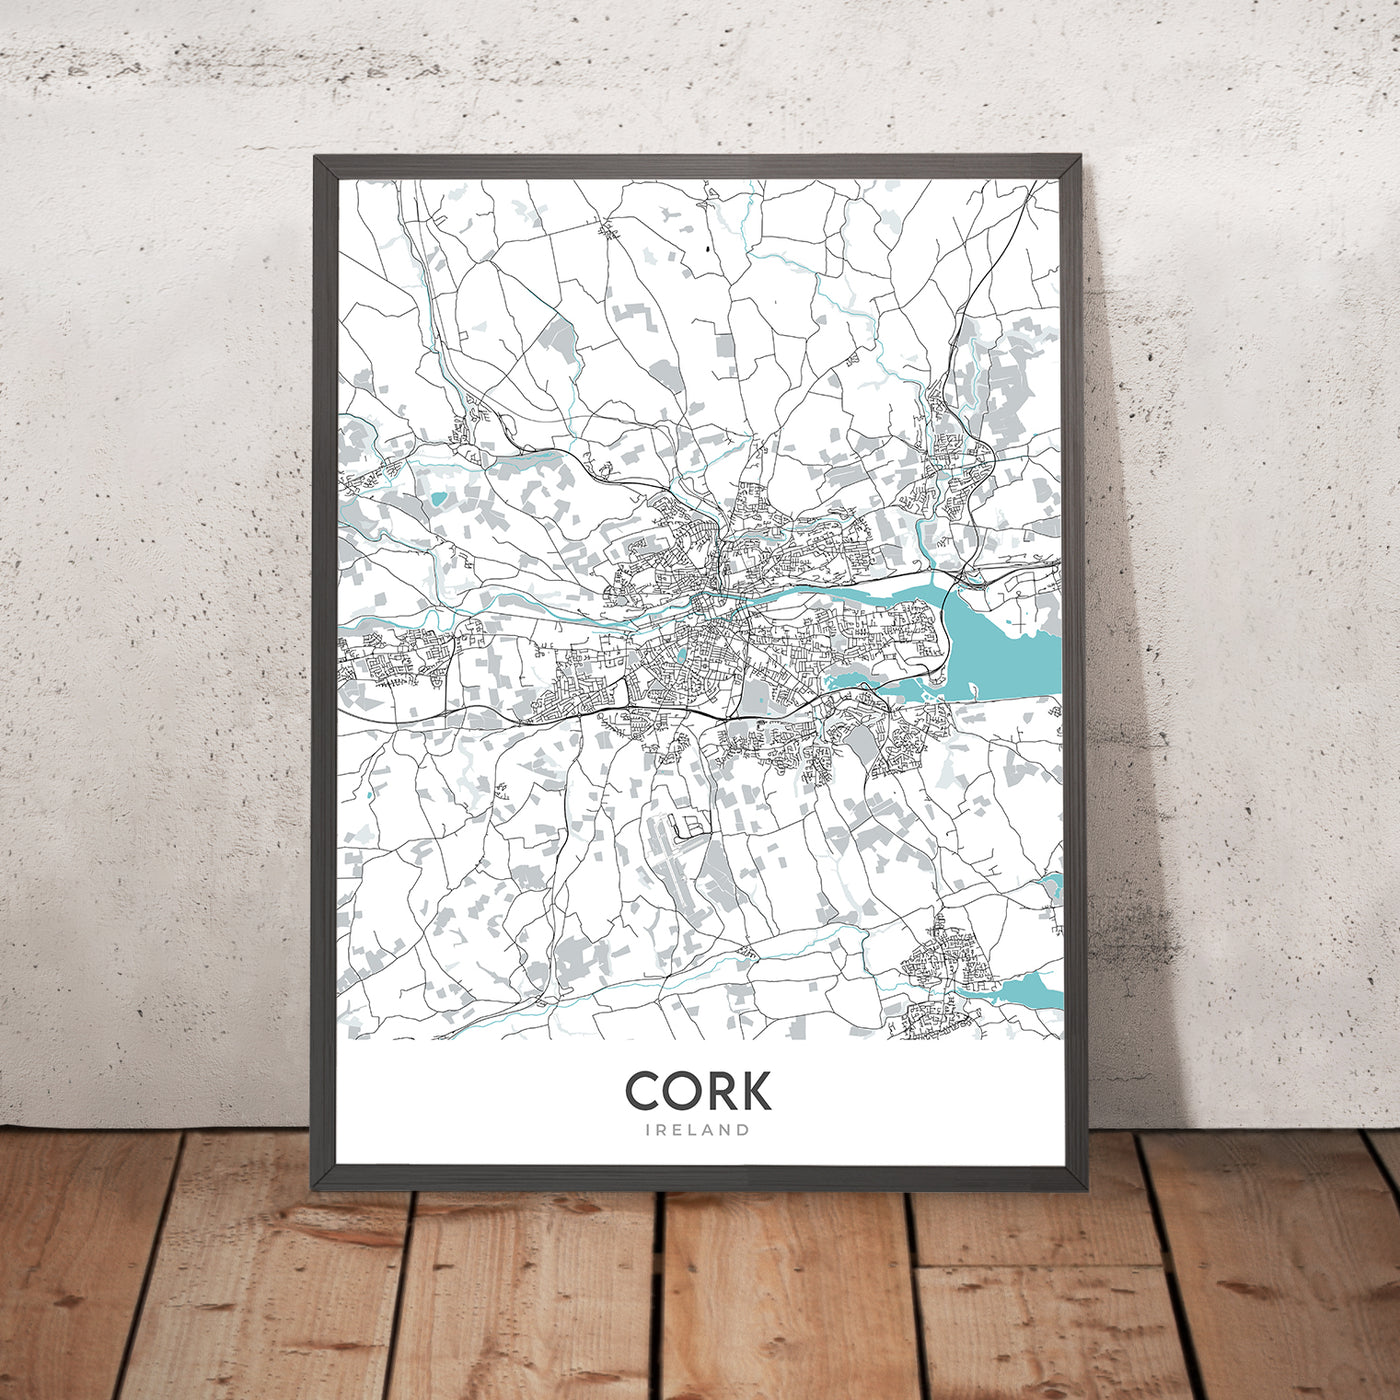 Moderner Stadtplan von Cork, Irland: Blarney Castle, Cork City Hall, Fitzgerald Park, N20, N22